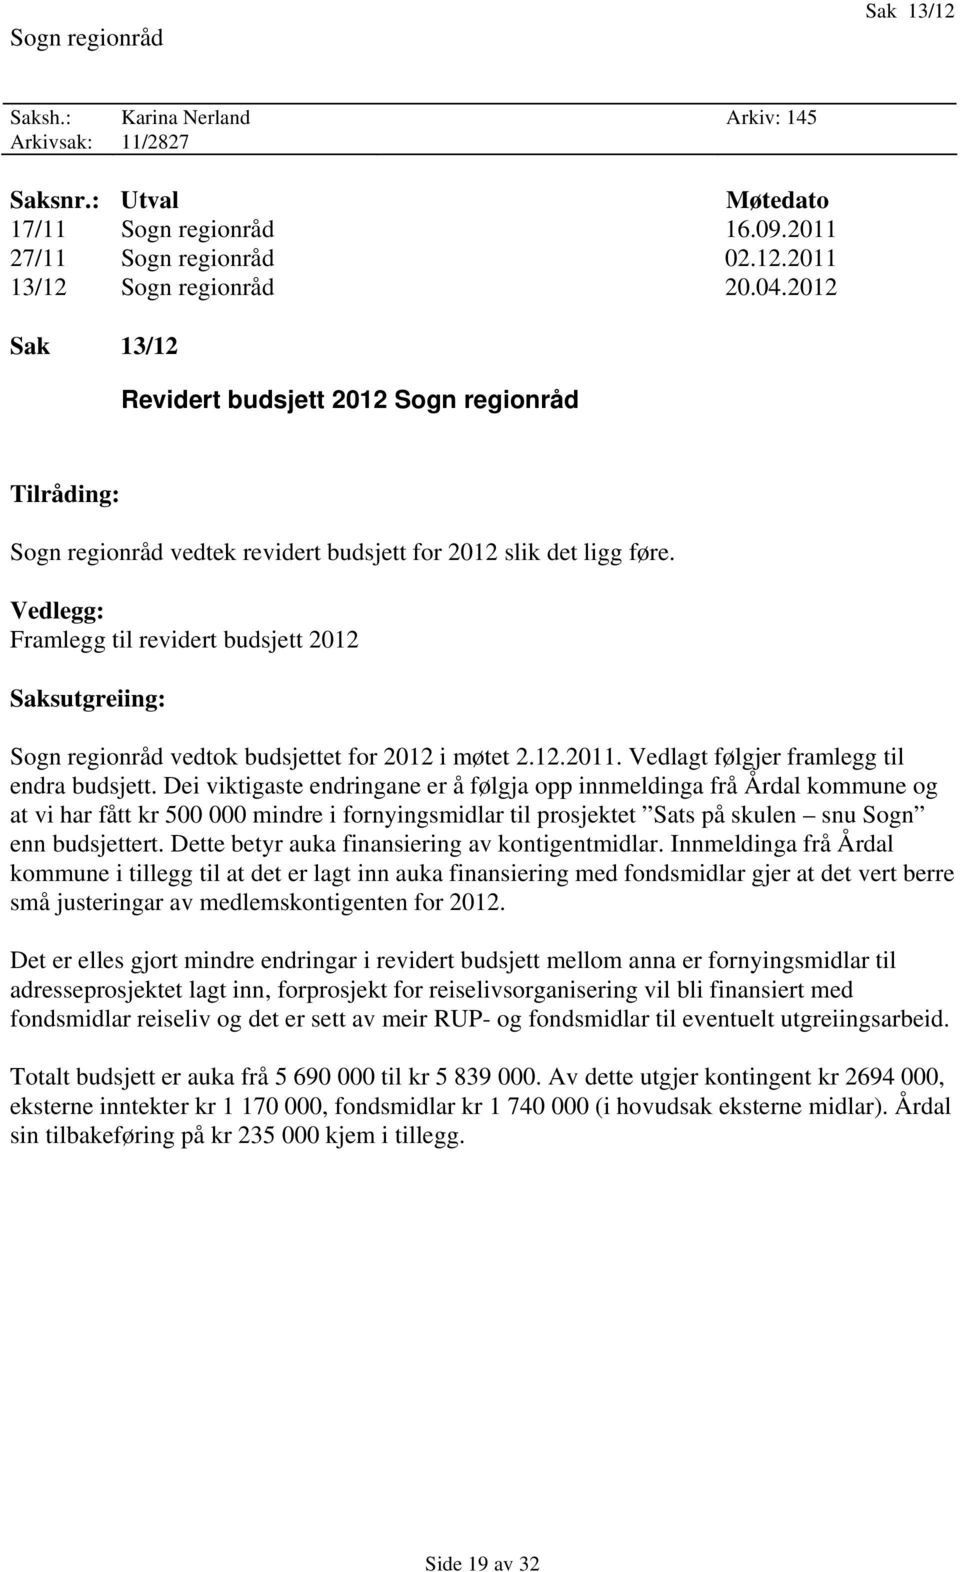 Vedlegg: Framlegg til revidert budsjett 2012 Saksutgreiing: Sogn regionråd vedtok budsjettet for 2012 i møtet 2.12.2011. Vedlagt følgjer framlegg til endra budsjett.